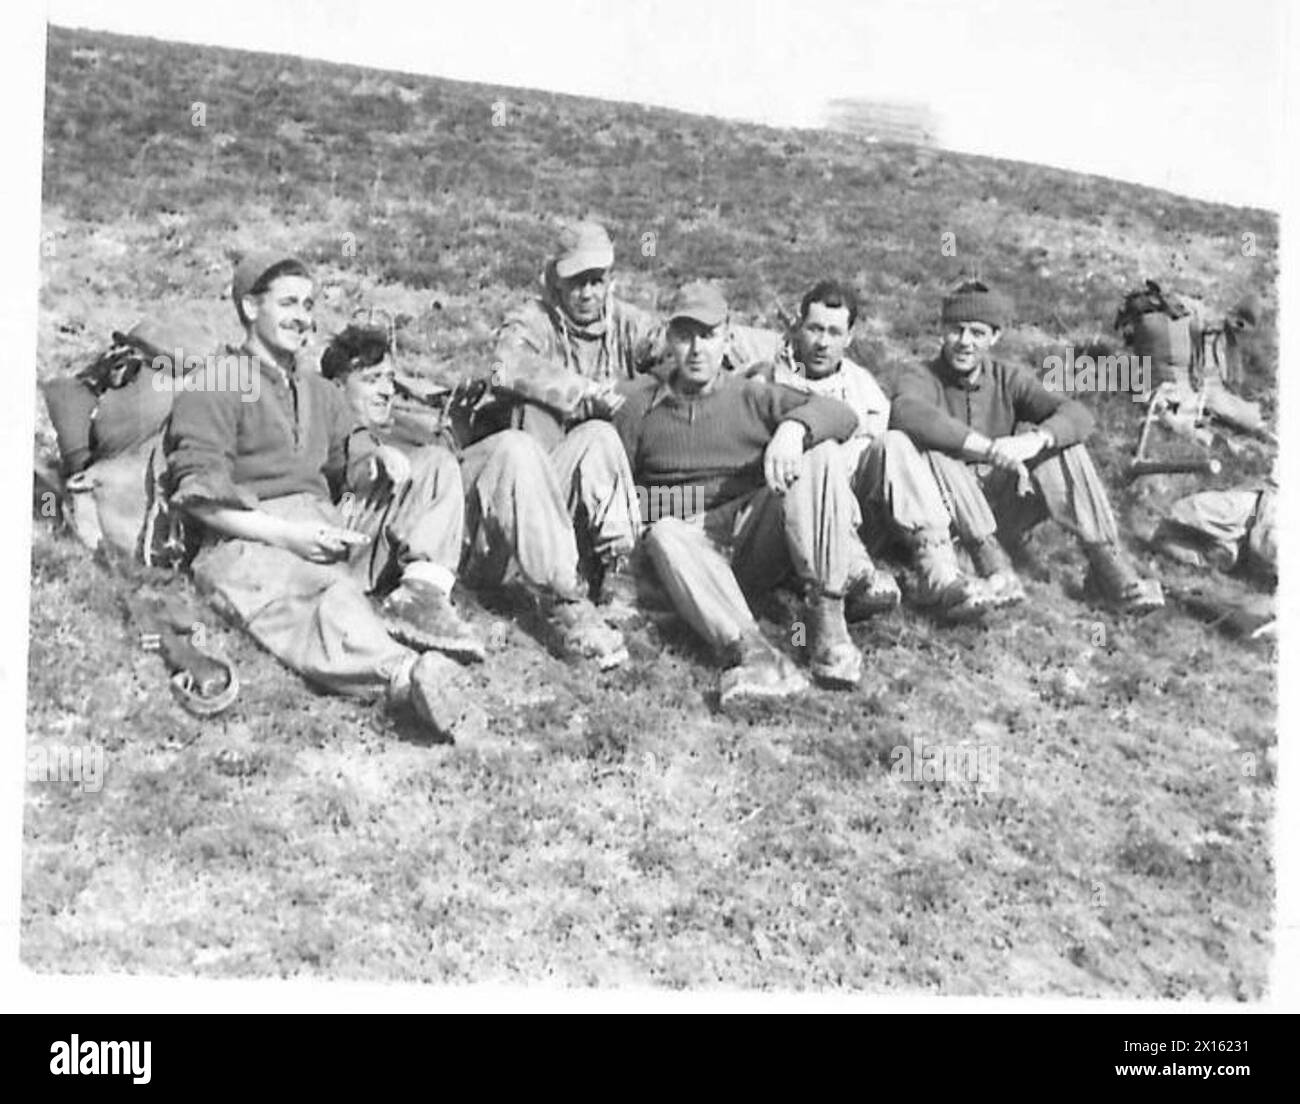 HUITIÈME ARMÉE : DIVERS - les hommes de Lovats scouts reposent à SAN APPOLINARE jusqu'à ce que le crépuscule vienne couvrir leurs mouvements vers les positions avancées. Dans le groupe sont :- le sergent Don McQueen de South Uist, Western Isles l/Cpl. Norman MacDonald de l'île de Skye MTR. High Gunn of Skerry Tongue, Sutherlandshire MTR. Jim Forsythe de Dunvegan, île de Skye Cpl Don Robertson de North Uist, Western Isles British Army Banque D'Images